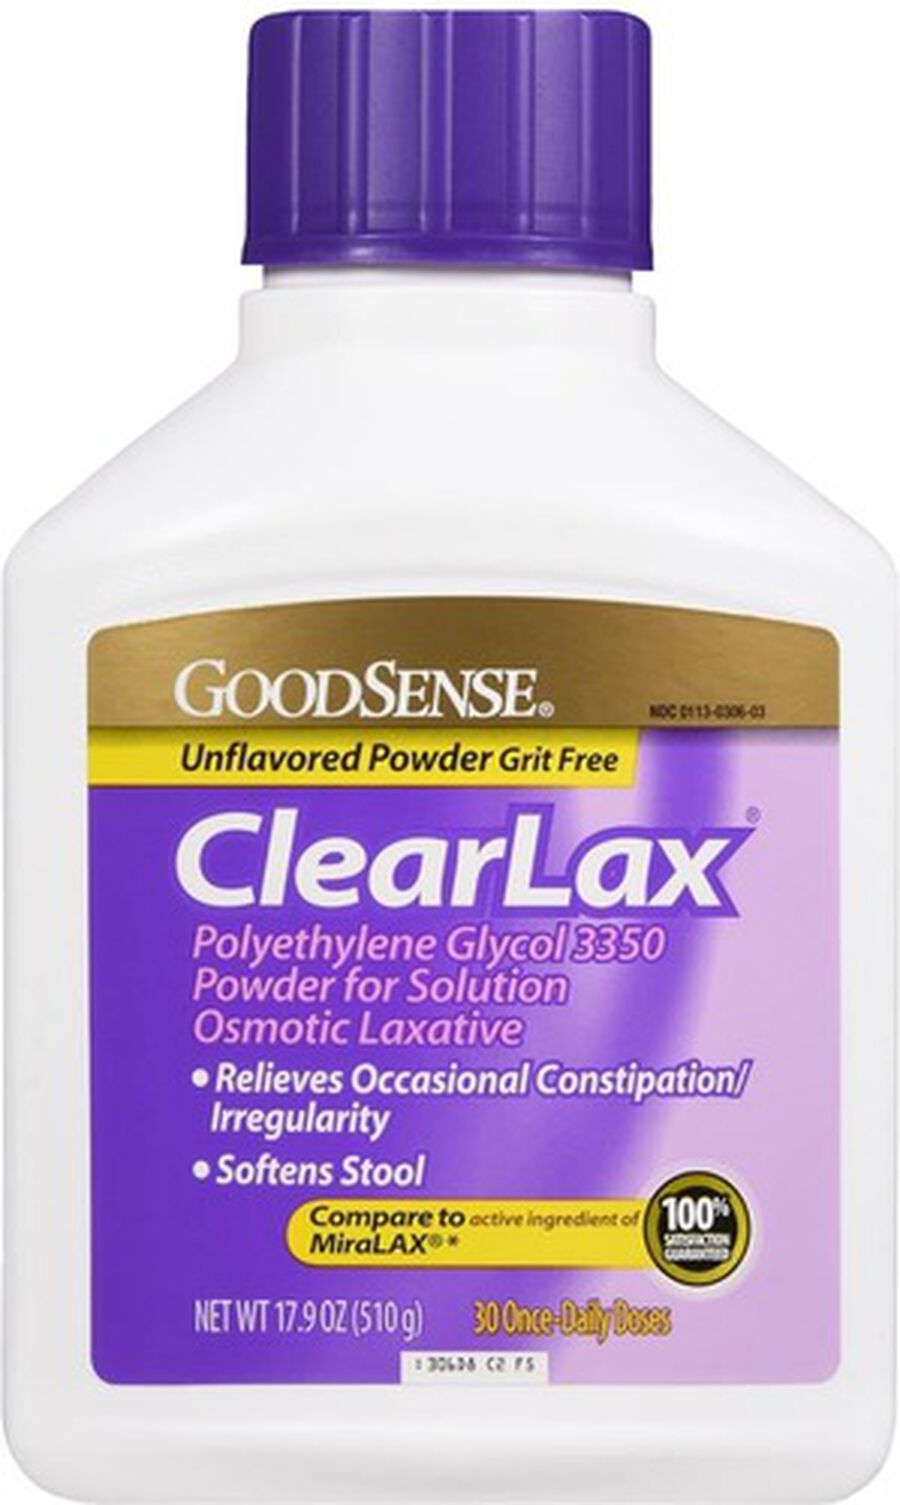 GoodSense® Clear Lax Polyethlene Glycol 3350 17g, 17.9 oz., , large image number 0